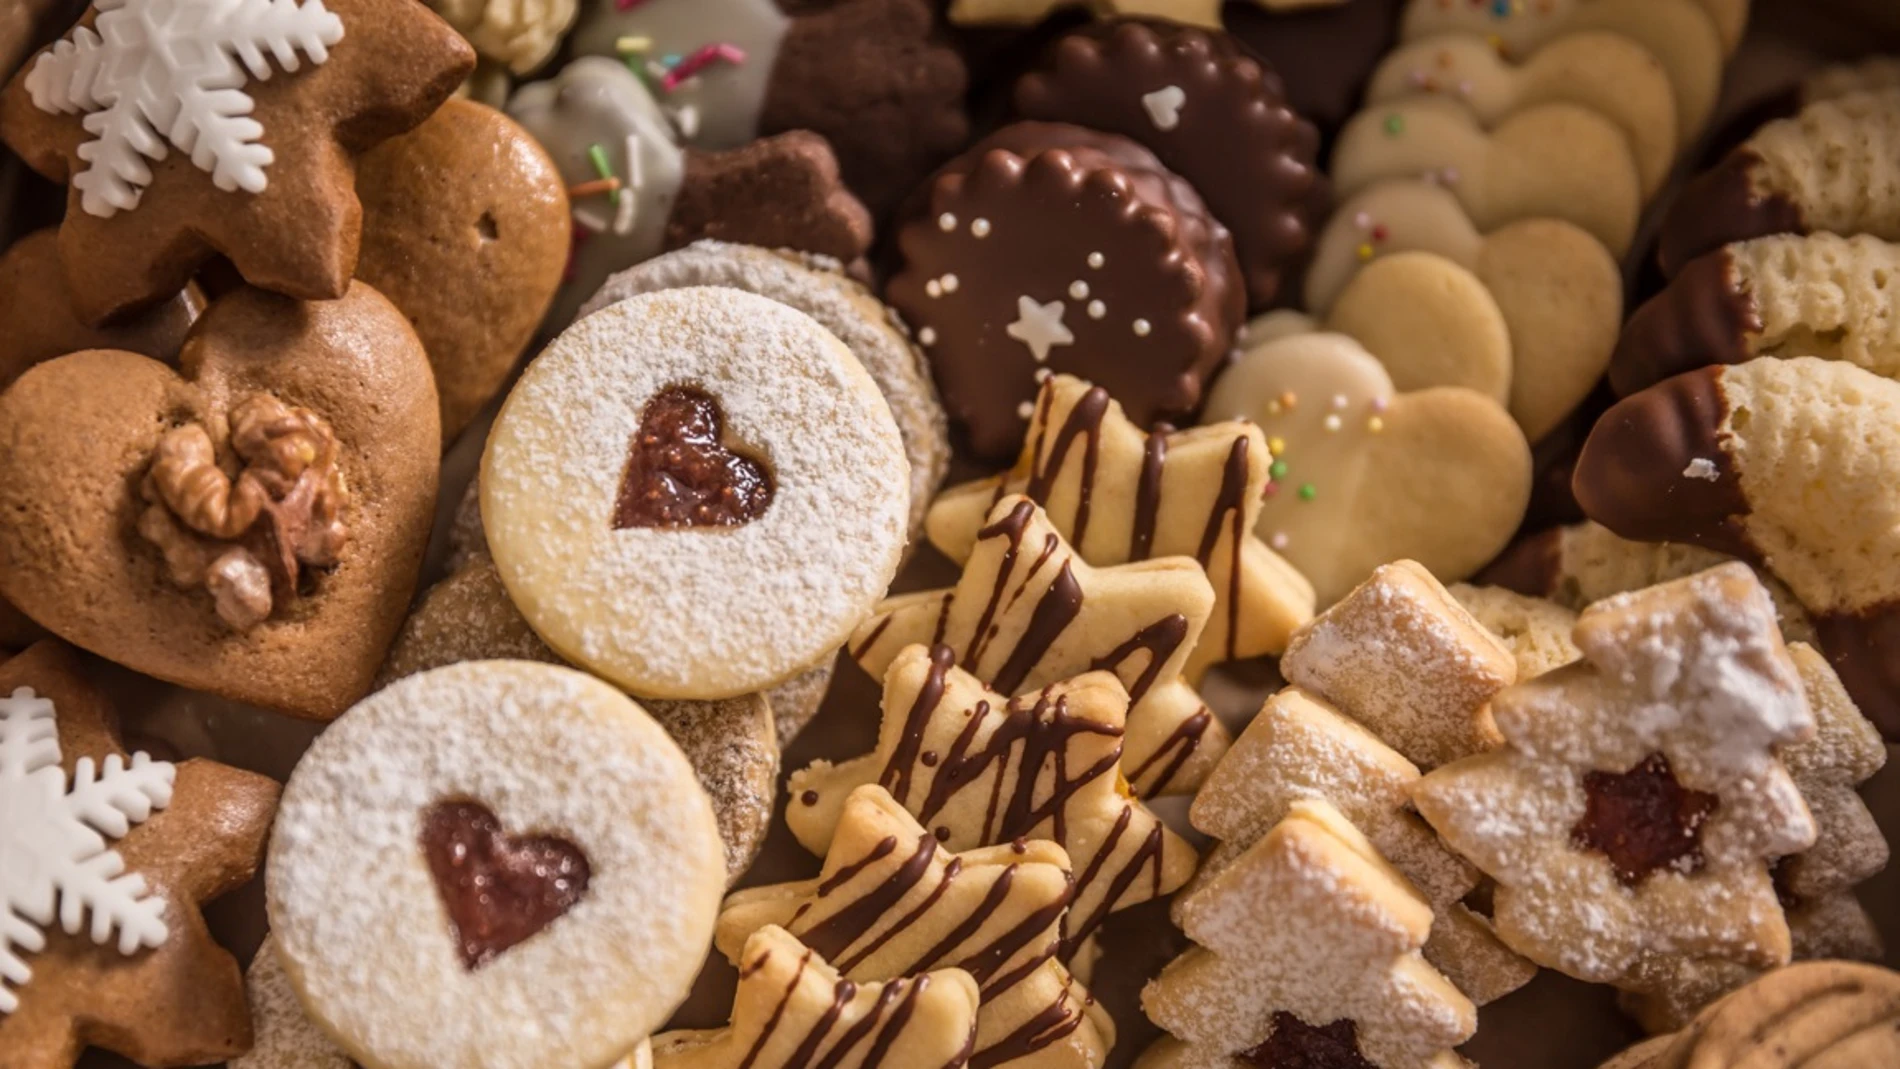 Economía.- El consumo de productos dietéticos aumenta hasta un 50% después de Navidades, según un estudio de Mentta